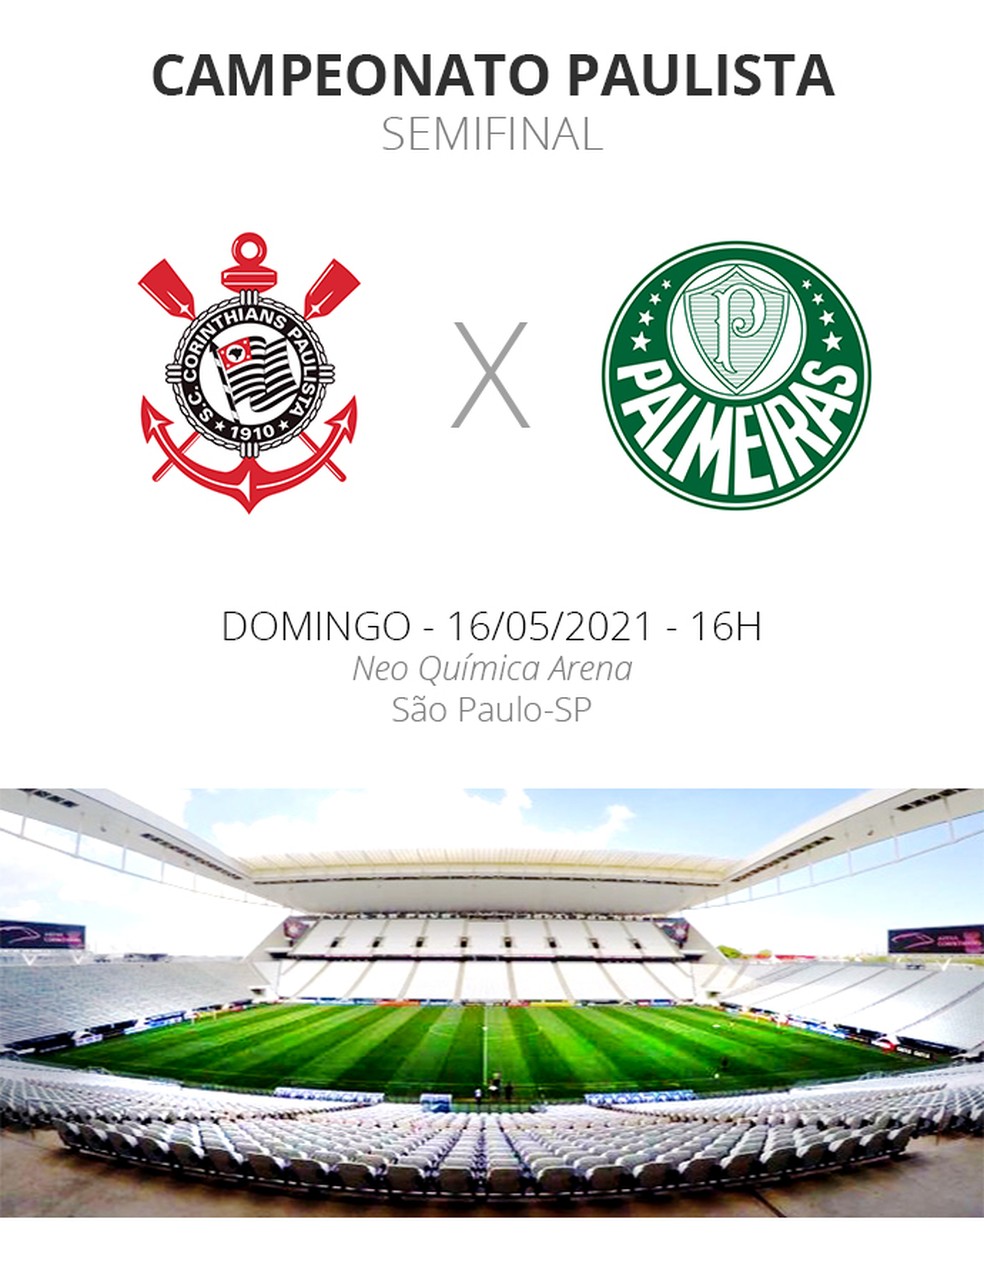 Quem o Palmeiras enfrenta na semifinal do Paulistão 2023?